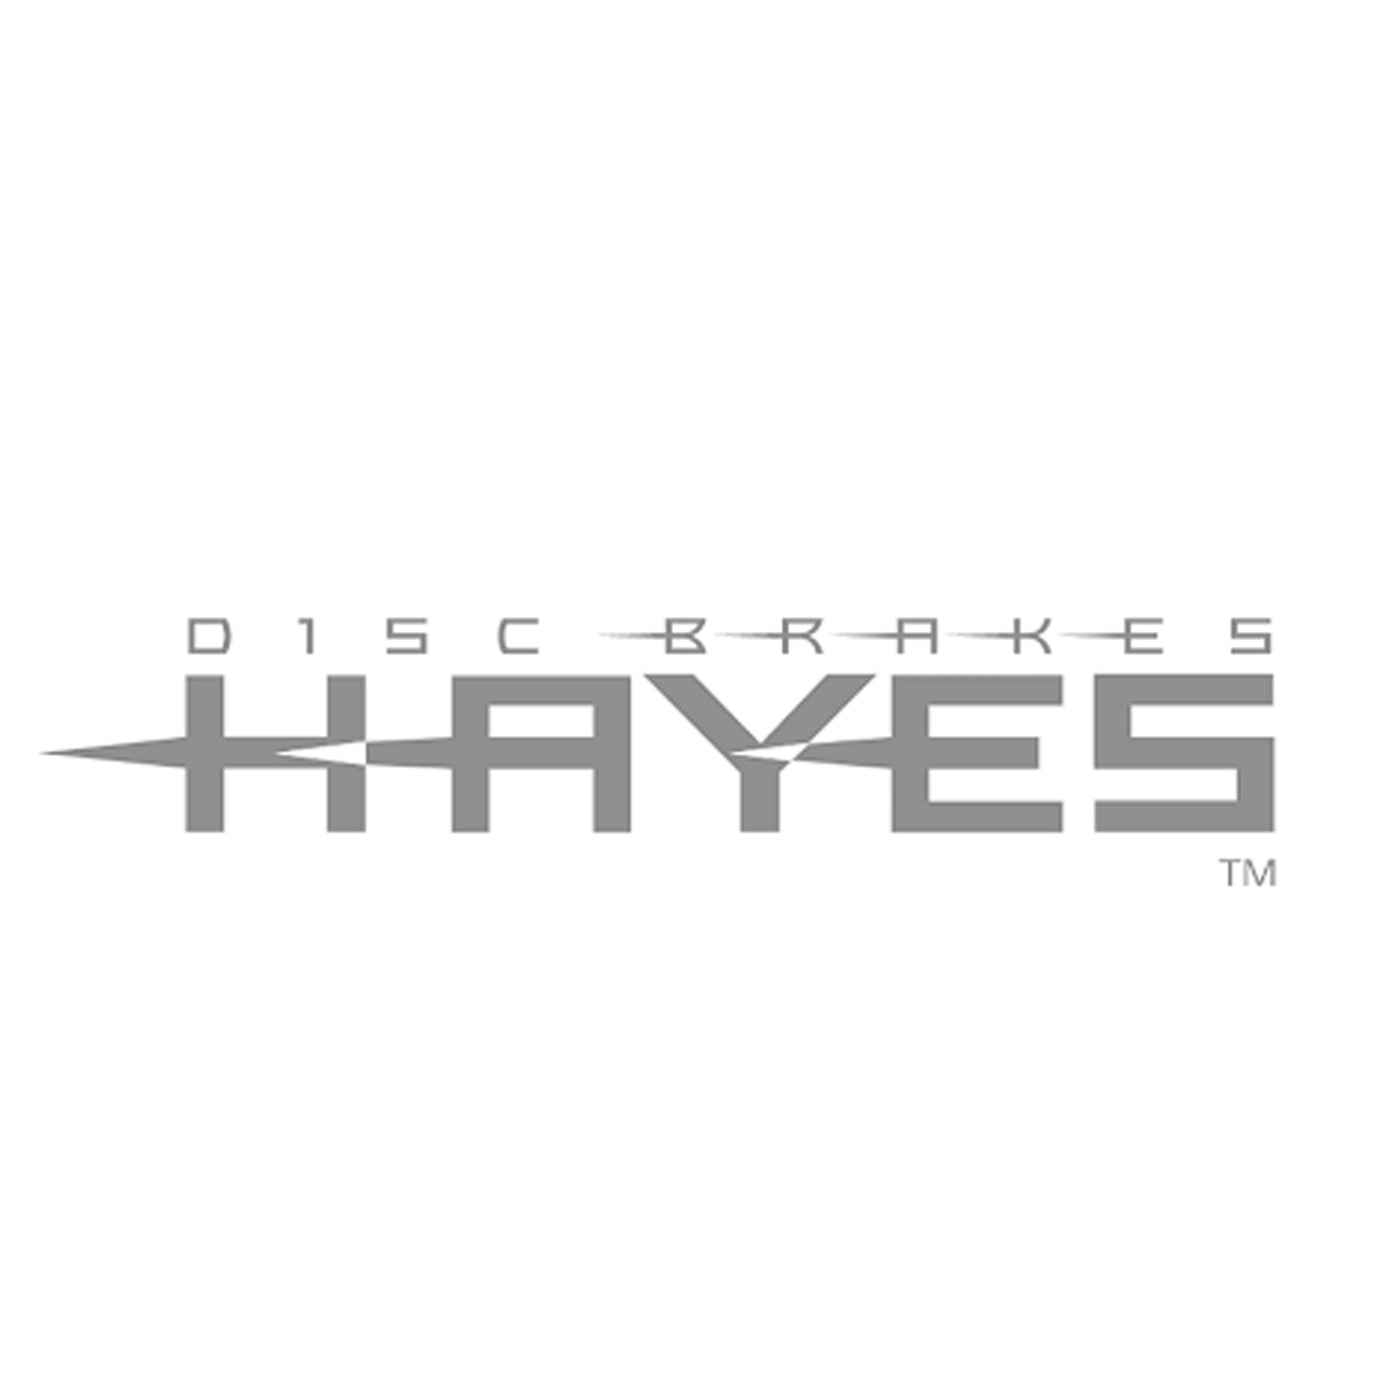 Hayes K2 HYDRAULIC HOSE KIT